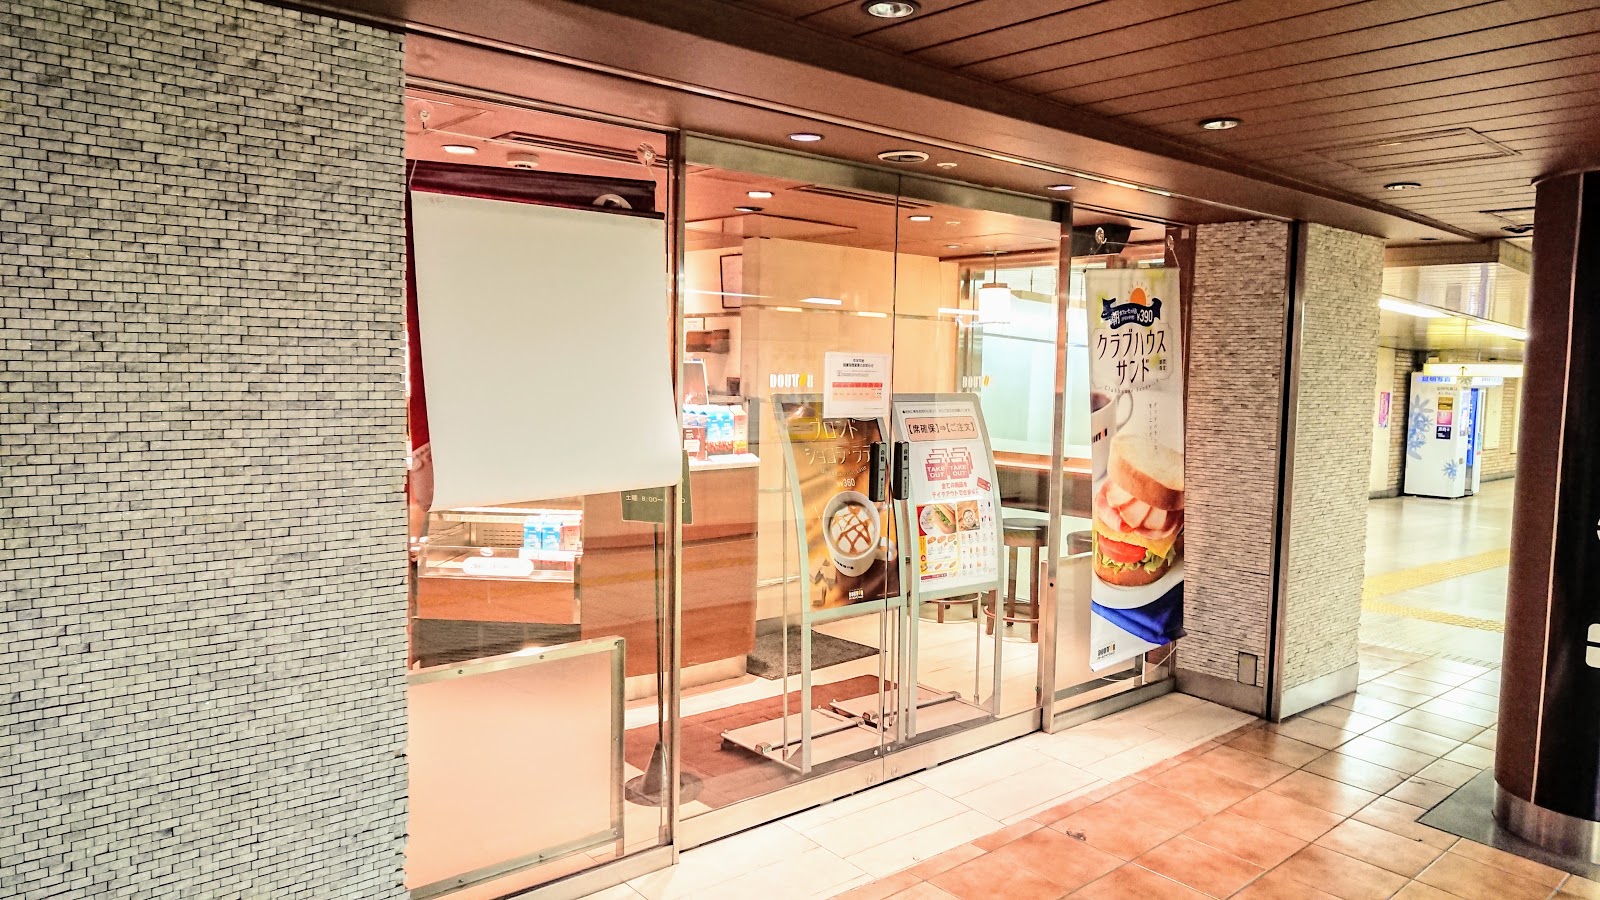 ドトールコーヒーショップ 霞ケ関メトロピア店の写真